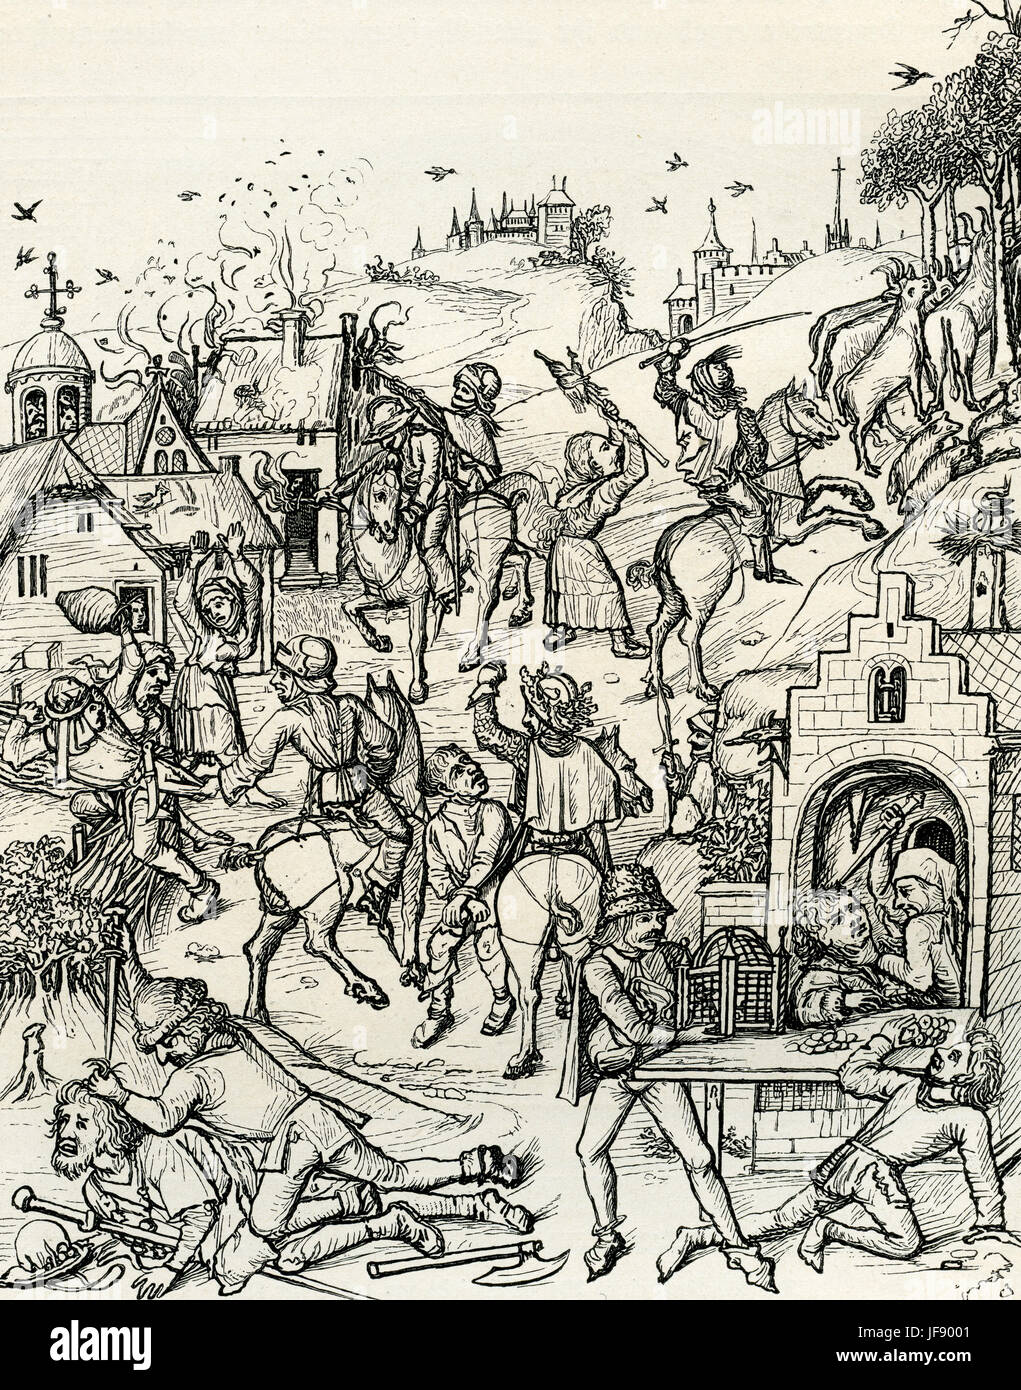 Plünderung eines mittelalterlichen deutschen Dorfes durch ein Raubritter - feudalen Landbesitzer Rückgriff auf Banditentum, geschützt durch seine Rechtsstellung, um finanzielle Schwierigkeiten, 15. Jahrhundert Abbildung zu lindern Stockfoto